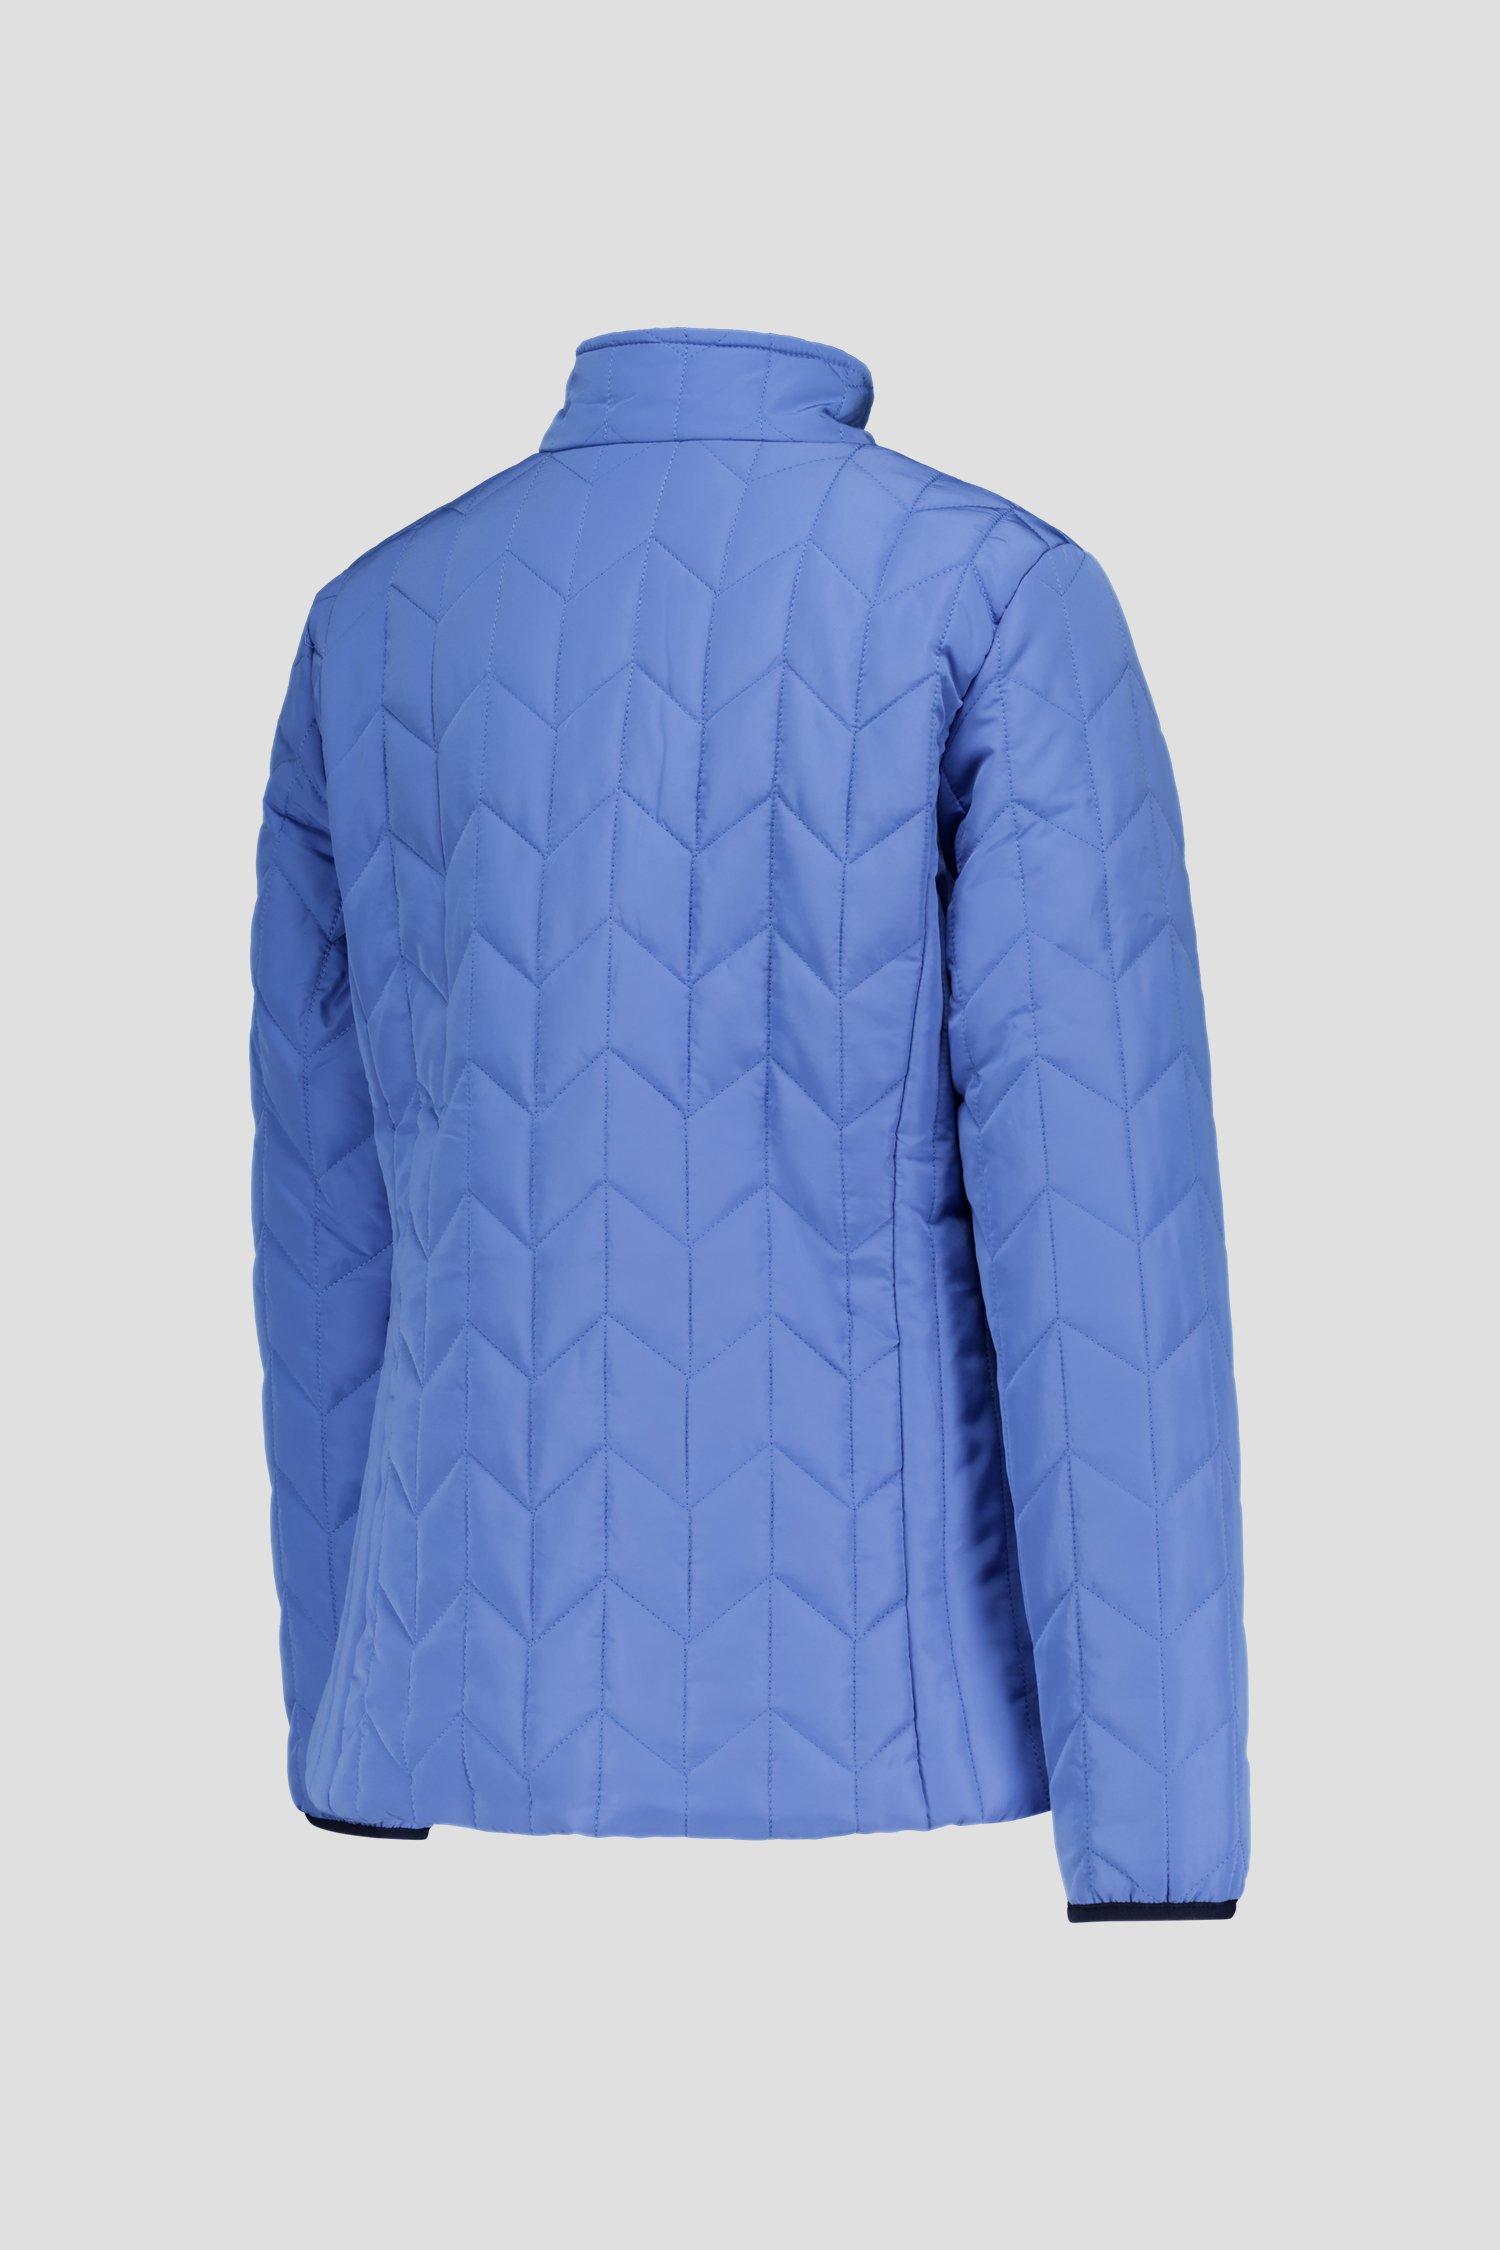 Blauwe, licht gewatteerde jas van Claude Arielle voor Dames